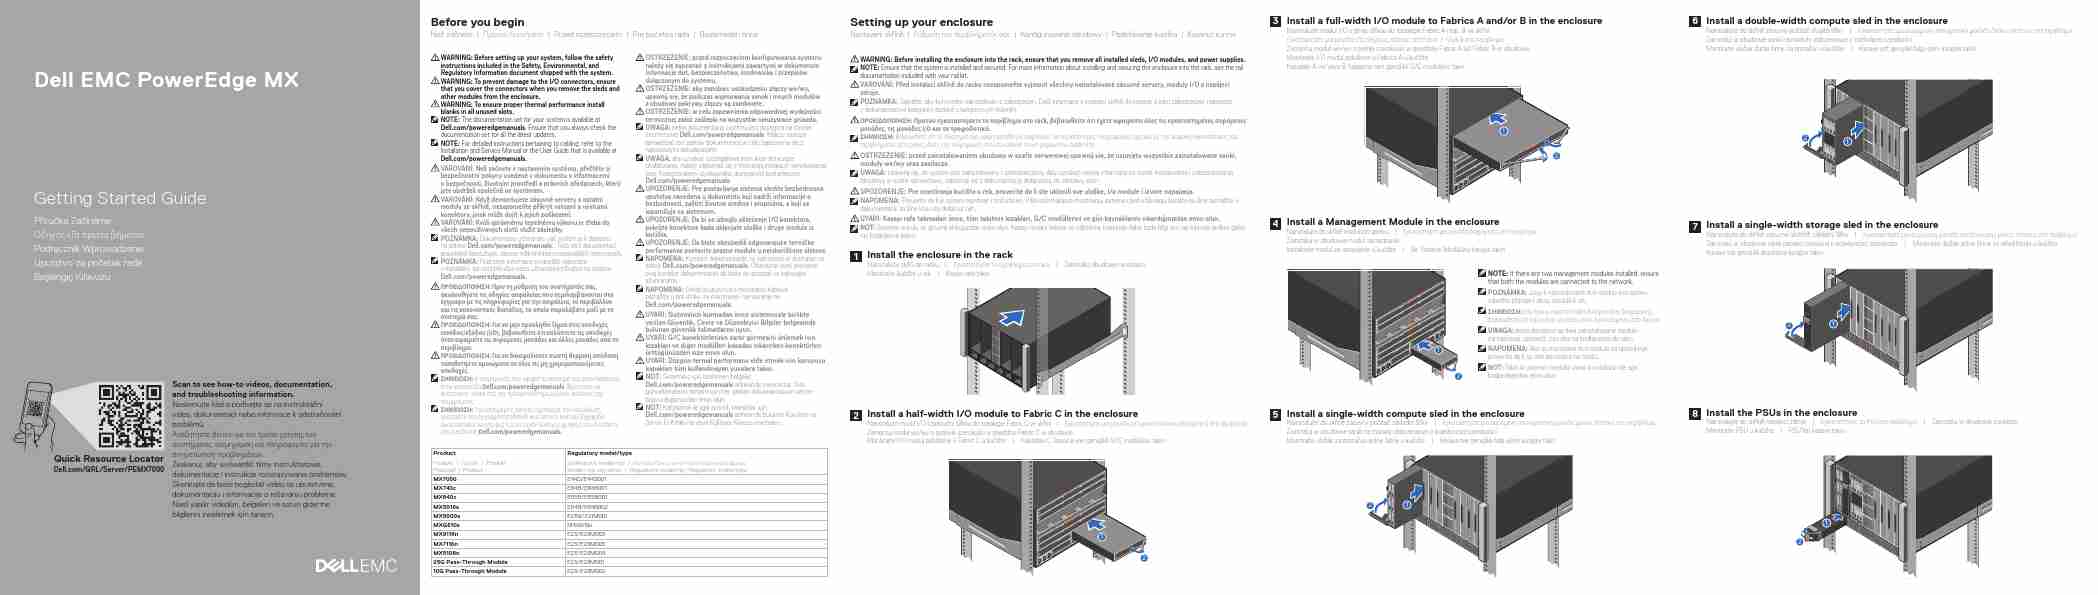 DELL EMC POWEREDGE MX7116N-page_pdf